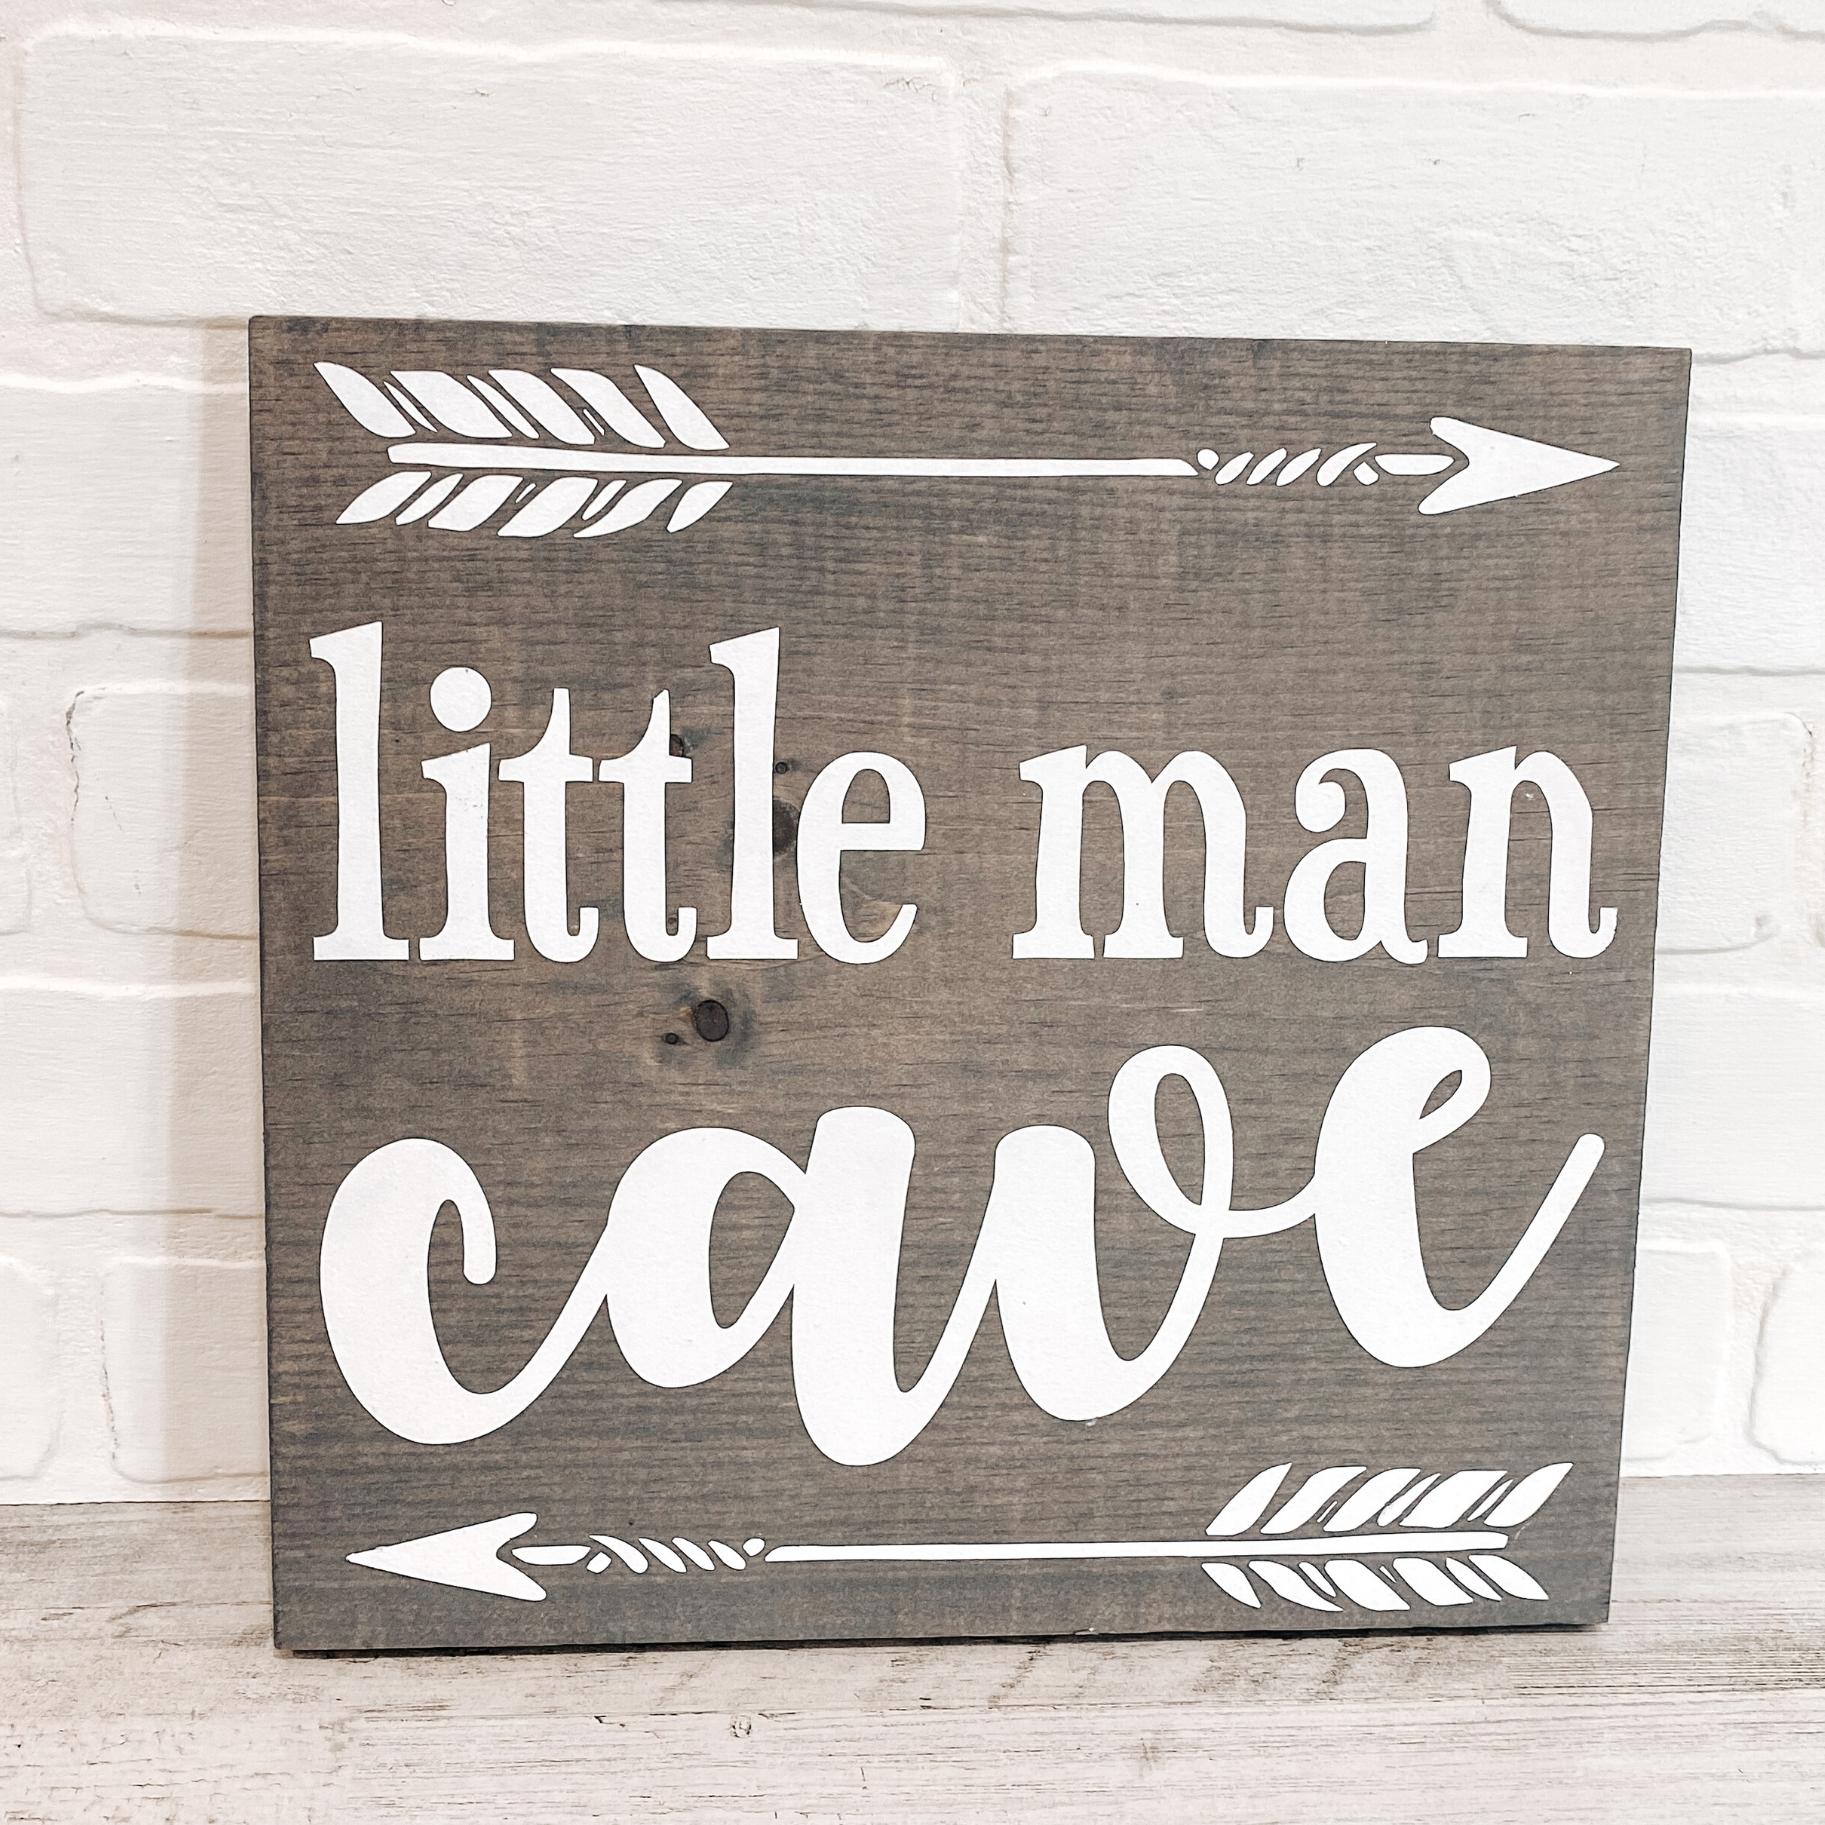 Little Man Cave - B-Cozy Home Decor